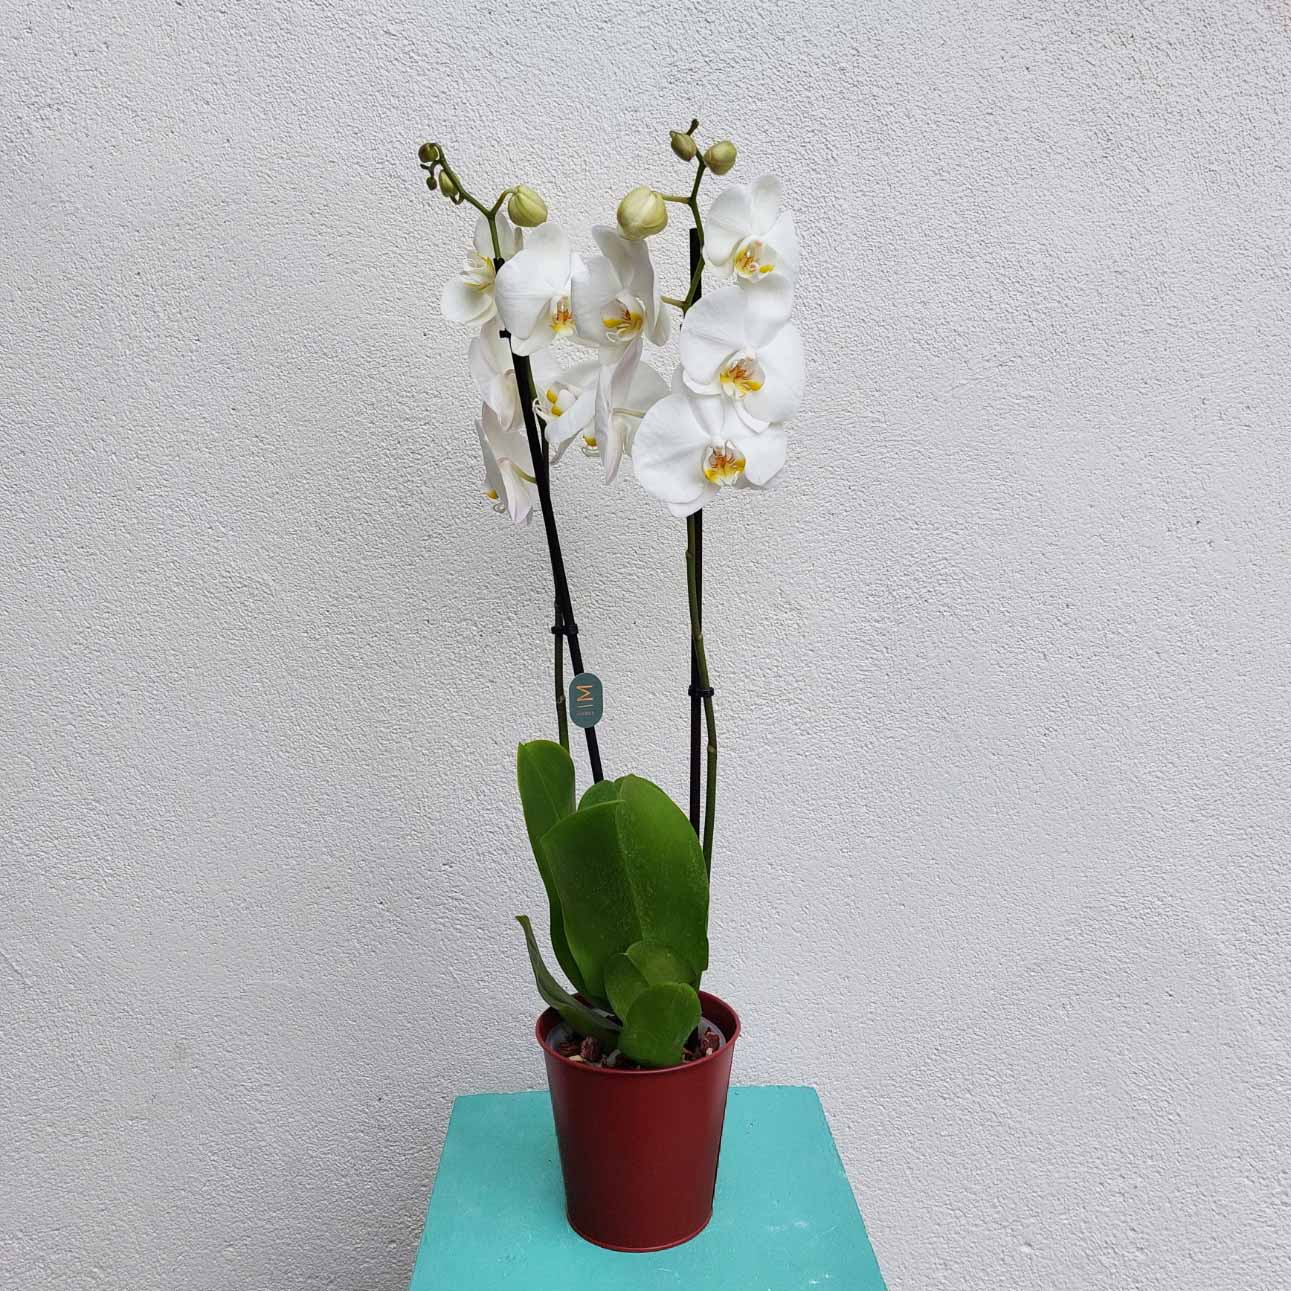 plantes_interieur_nantes_cadeau_orchidee_fleuriste_la_serre_zola_livraison_11